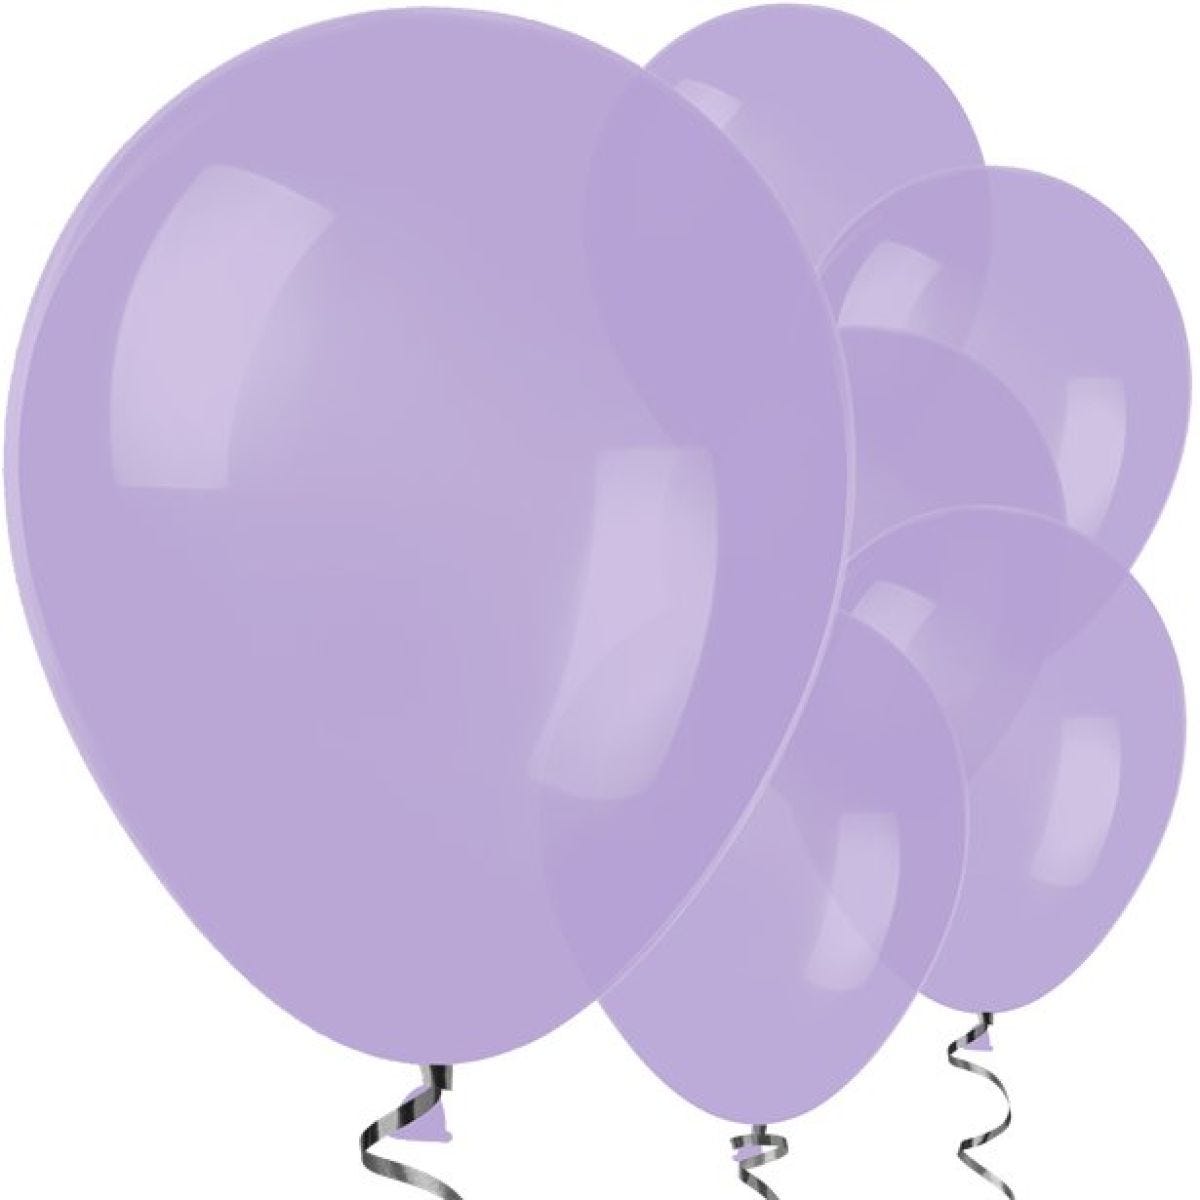 Lilac Balloons - 12" Latex Balloons